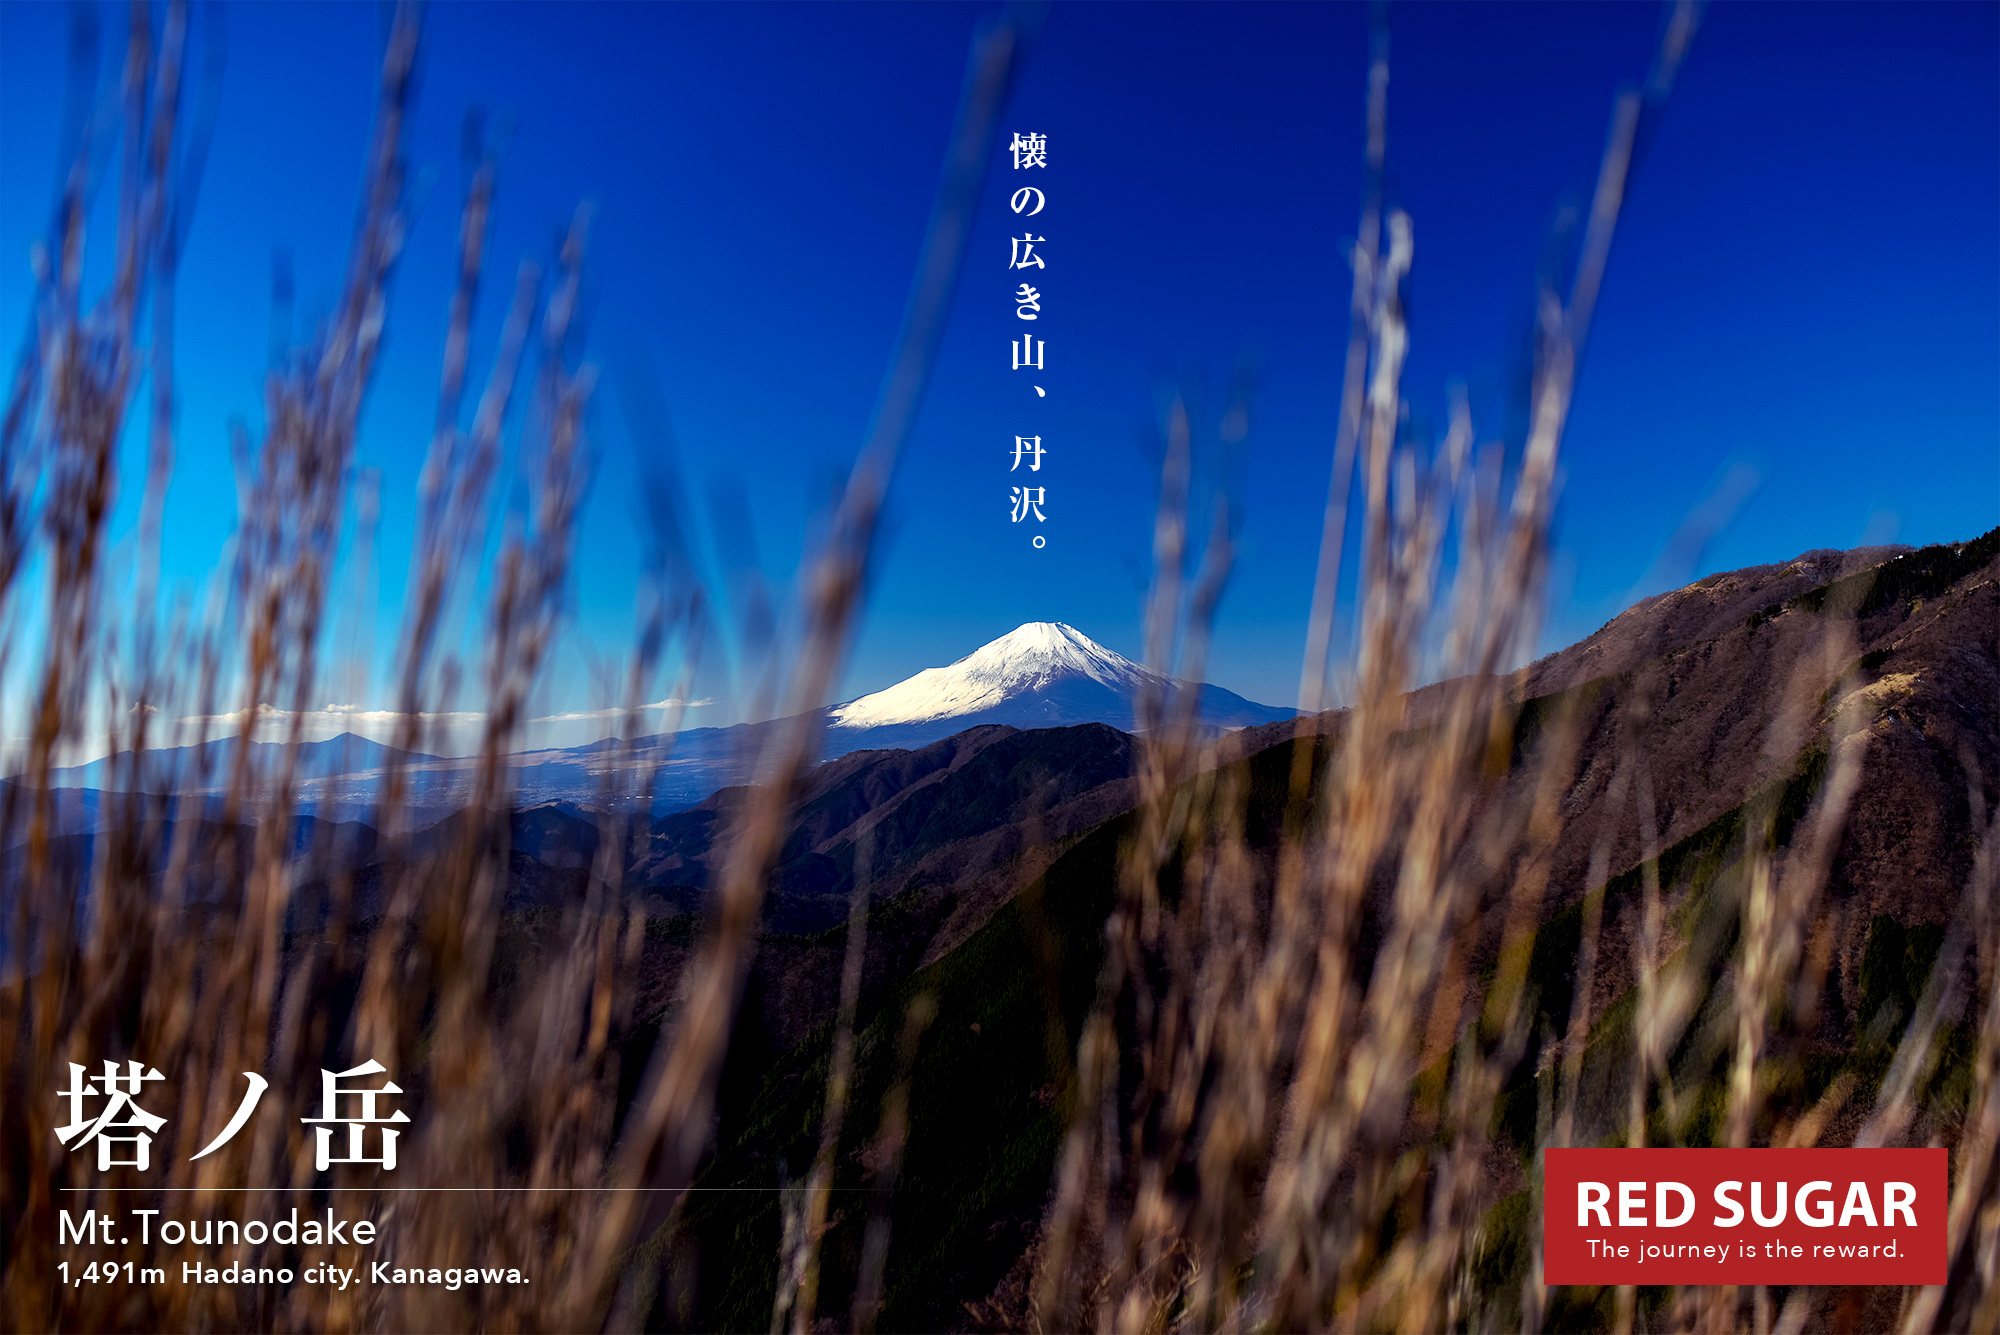 丹沢 塔ノ岳 絶品の富士山を望む丹沢一の名峰 雪に染まる表尾根はベストシーズンの旅 Red Sugar